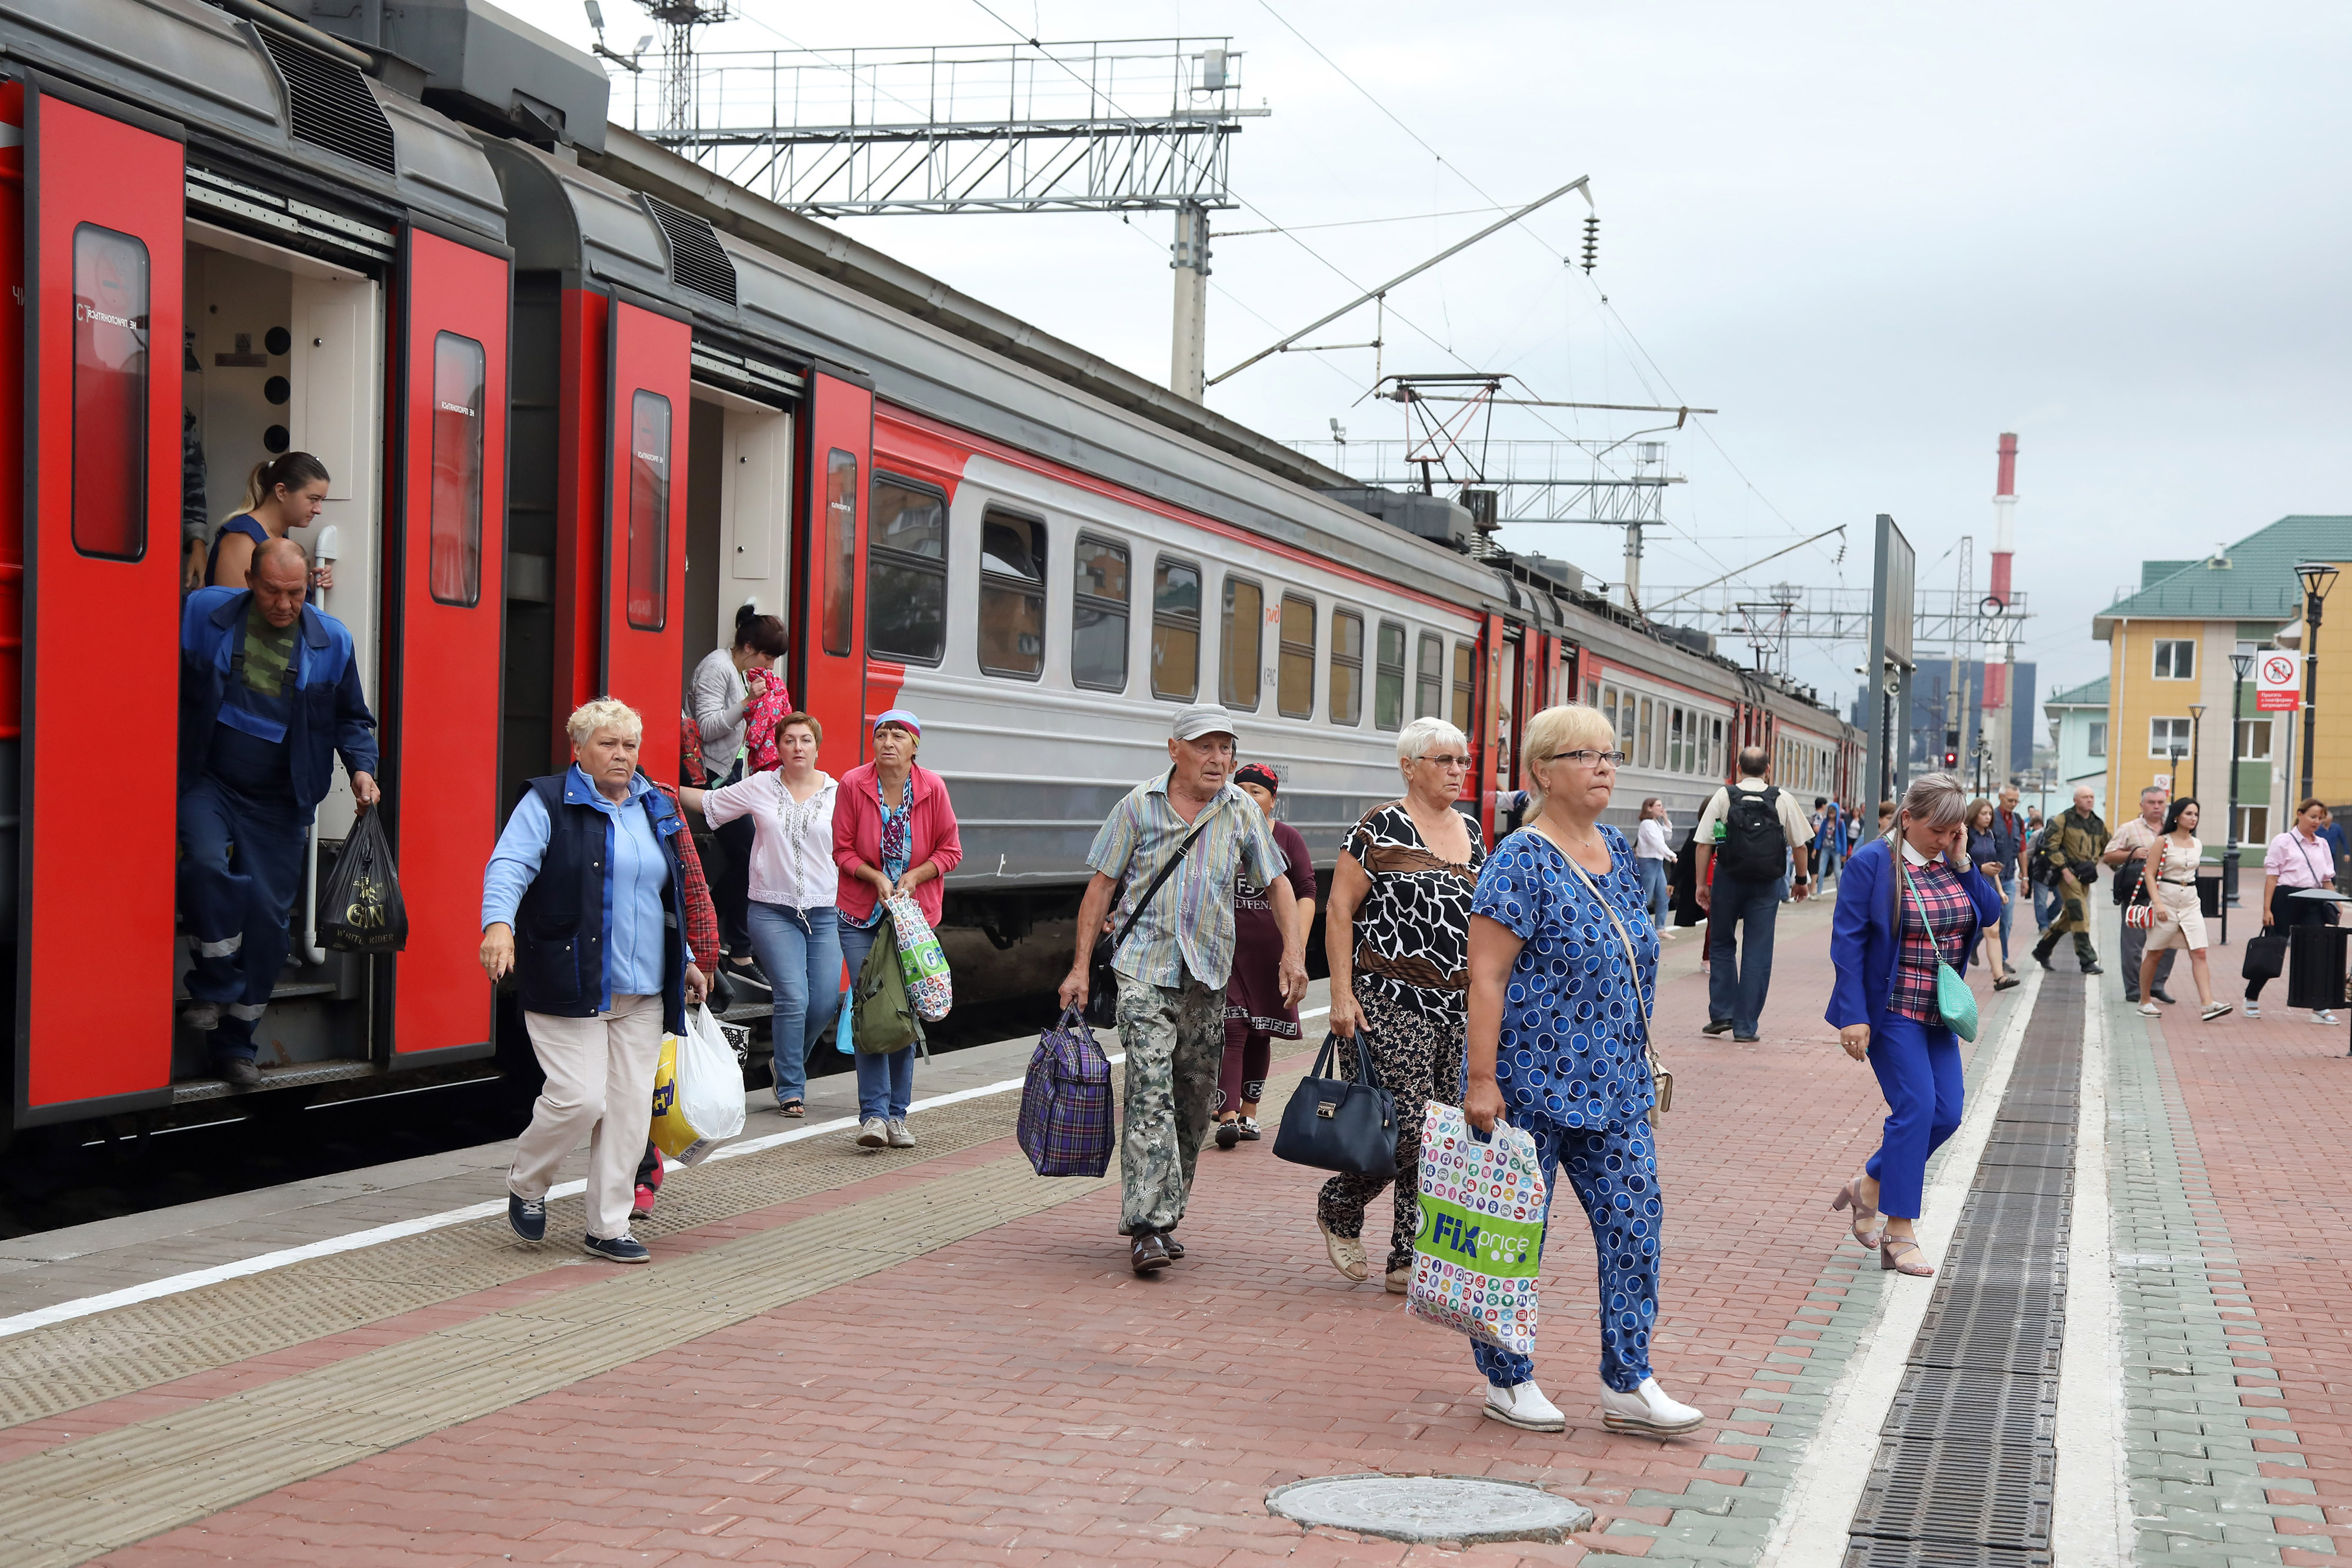 На станциях можно купить поезд. Пассажиры на вокзале. Поезд электричка. Станции поезда люди. Люди на платформе электричка.